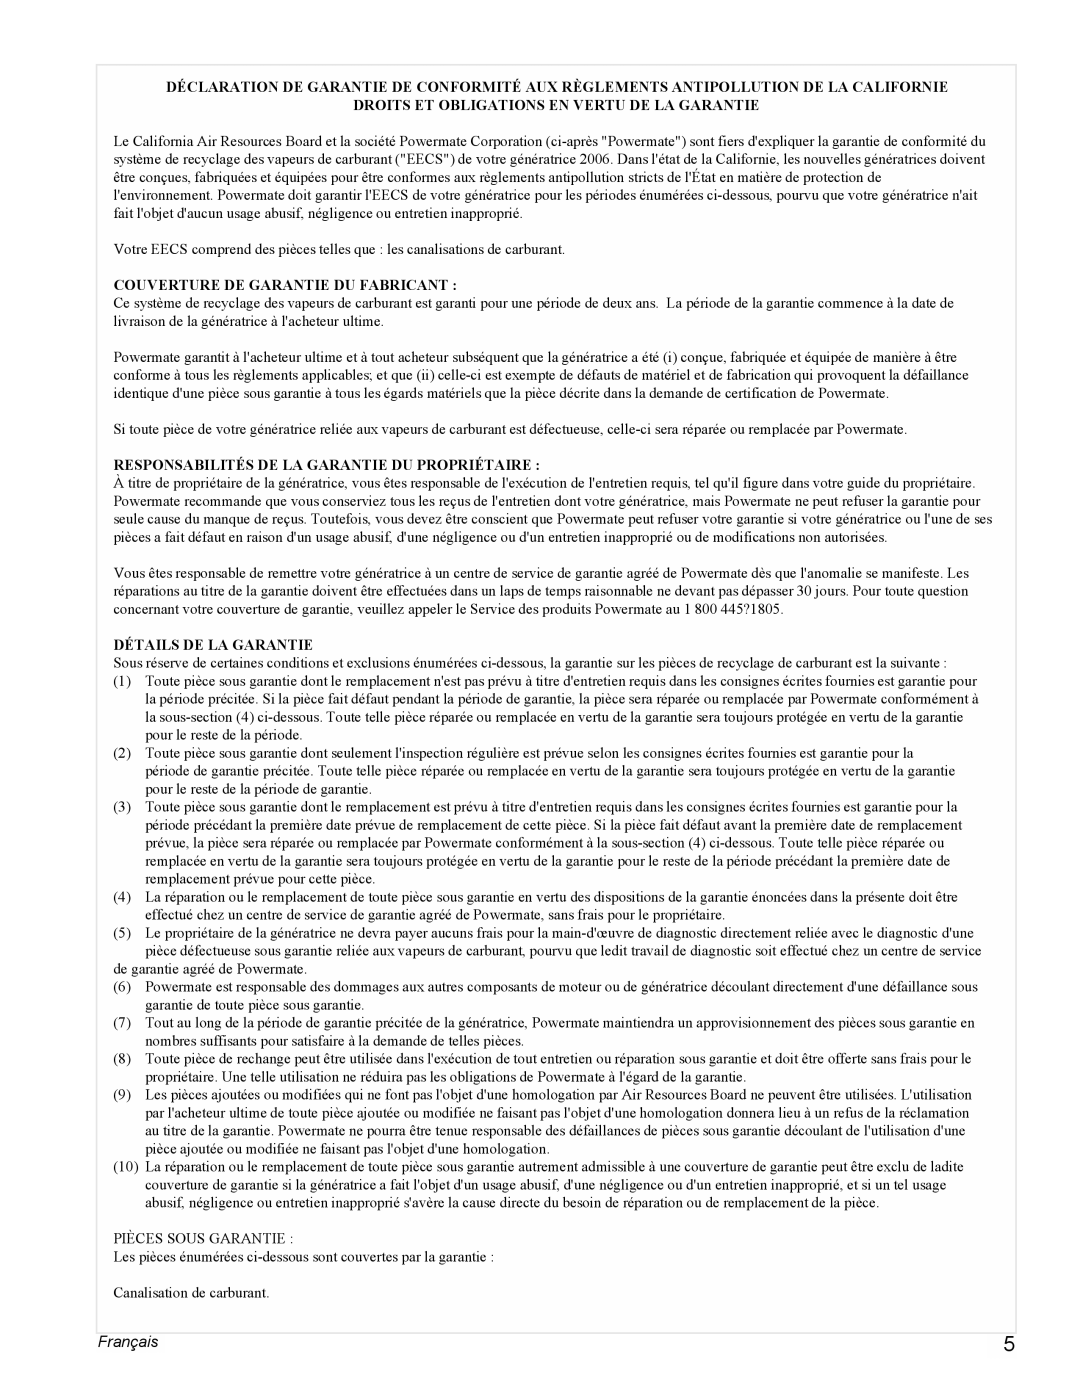 Powermate PMC543000 manual Français, Droits Et Obligations En Vertu De La Garantie, Couverture De Garantie Du Fabricant 